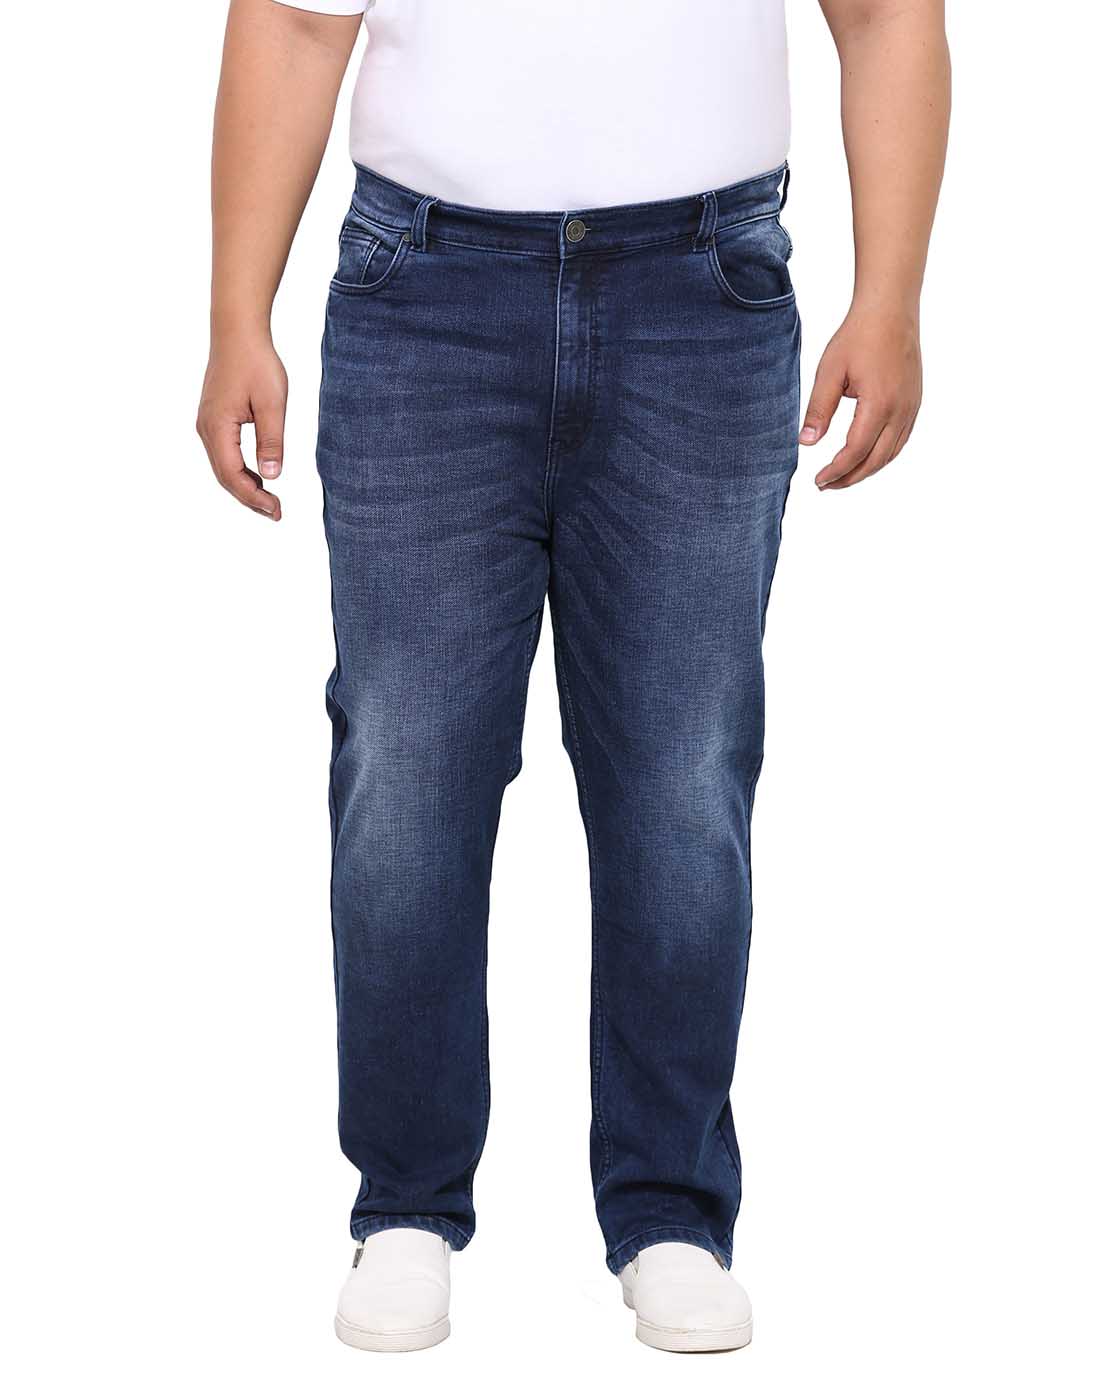 bottomwear/jeans/BEPLJPJ15151/bepljpj15151-1.jpg